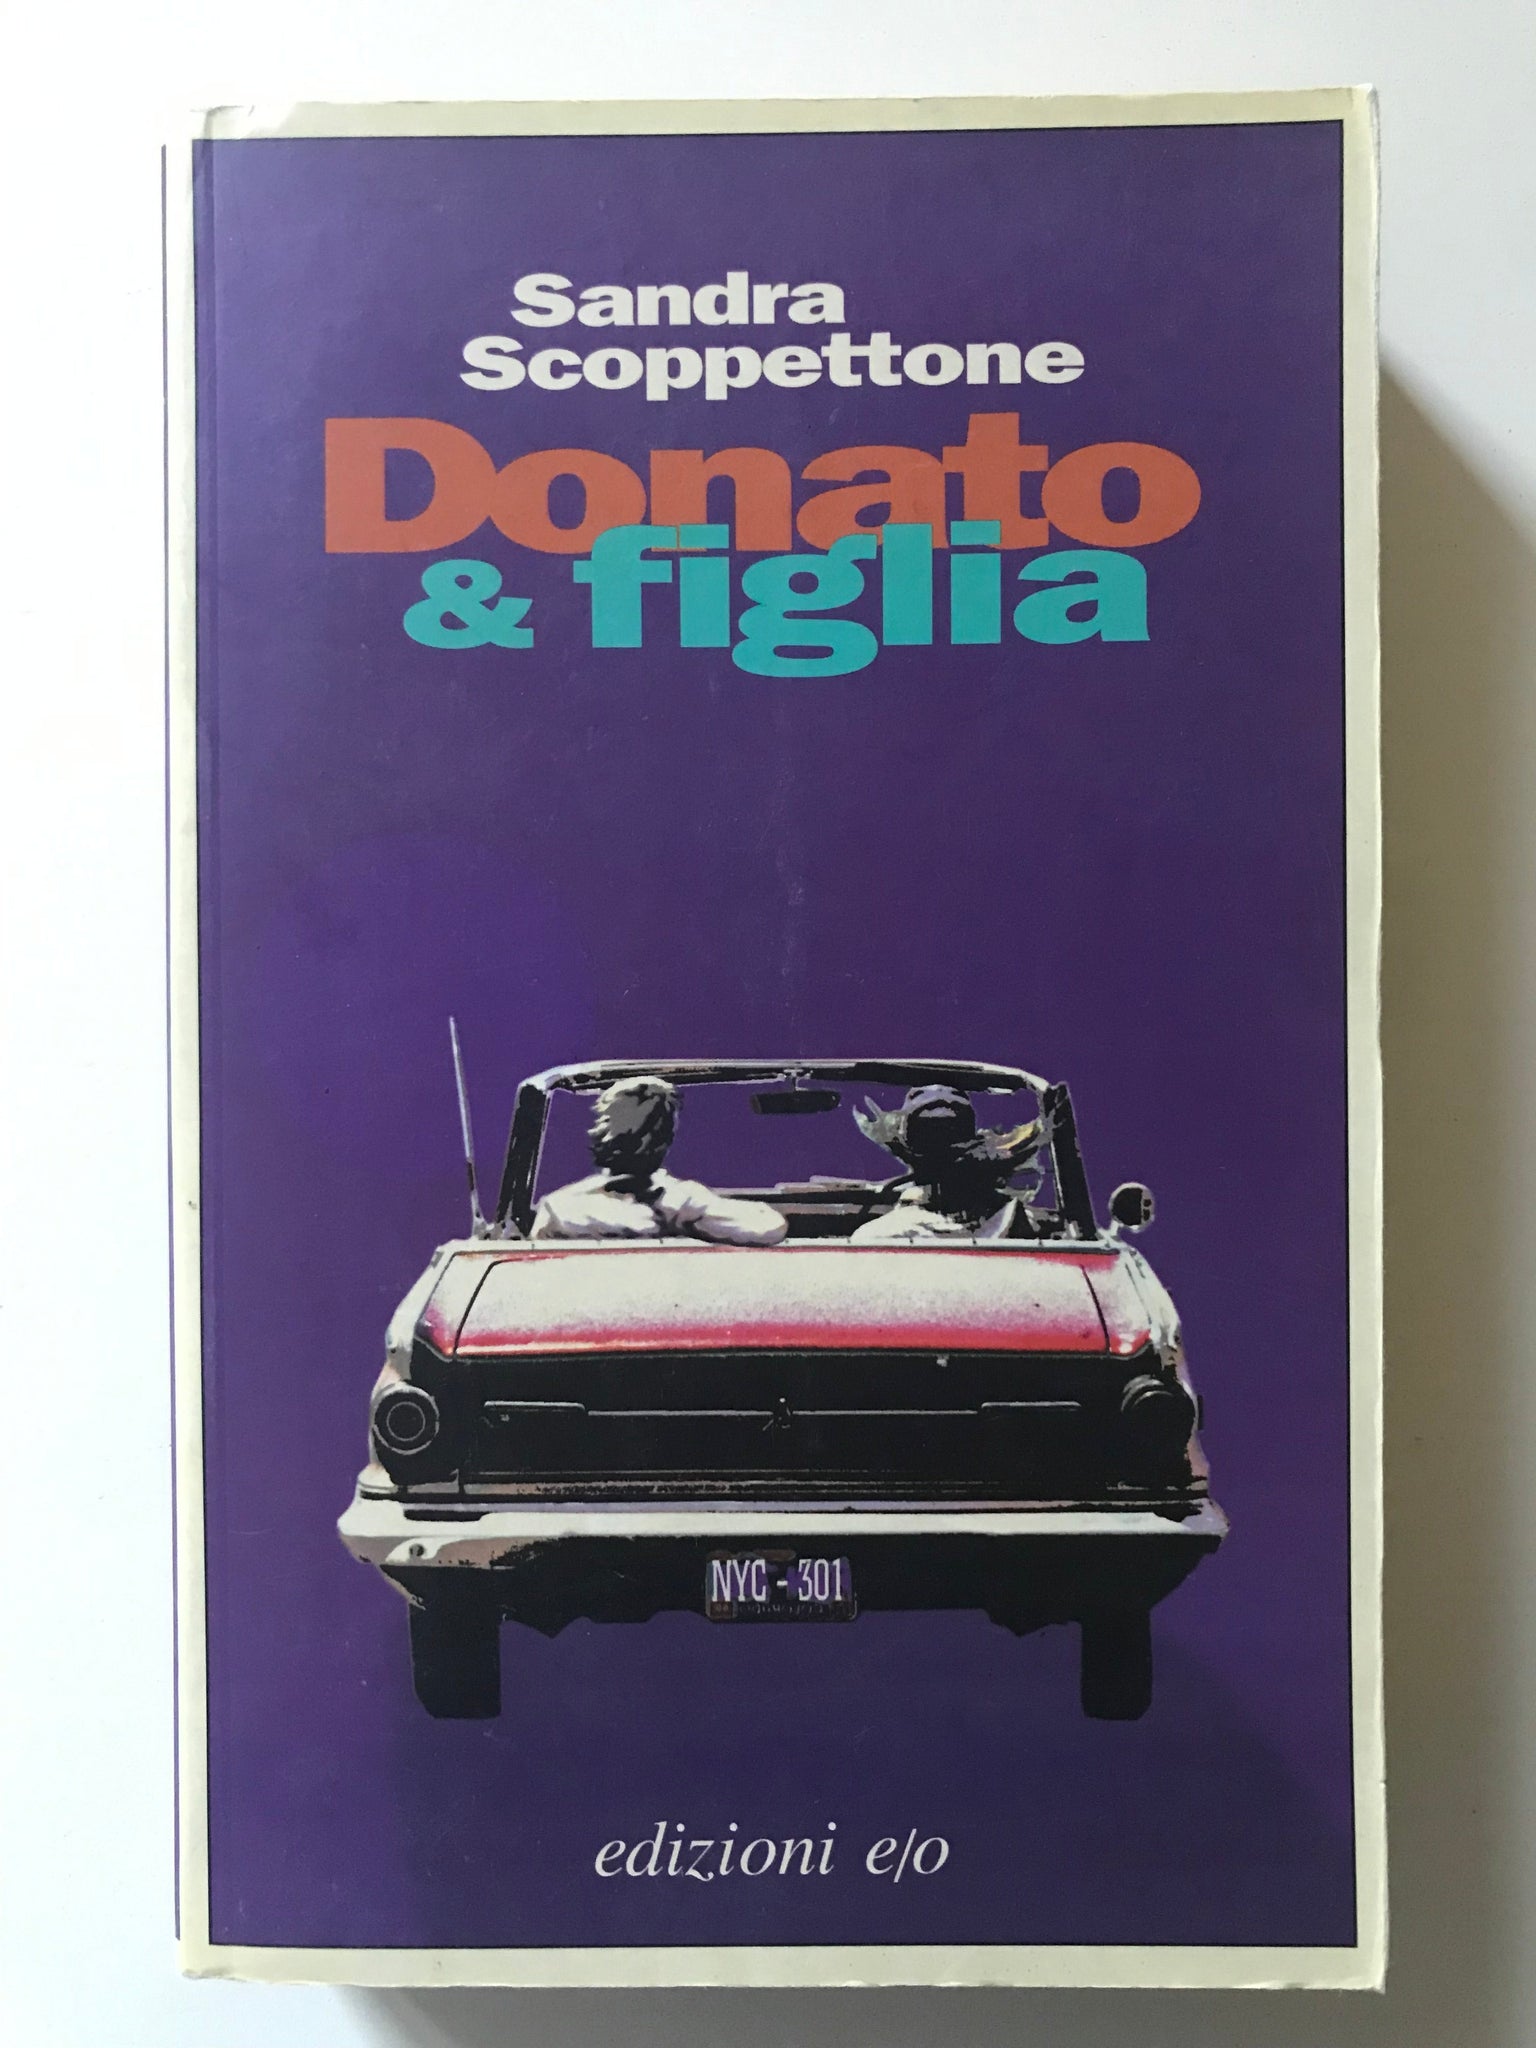 Sandra Scoppettone - Donato & figlia